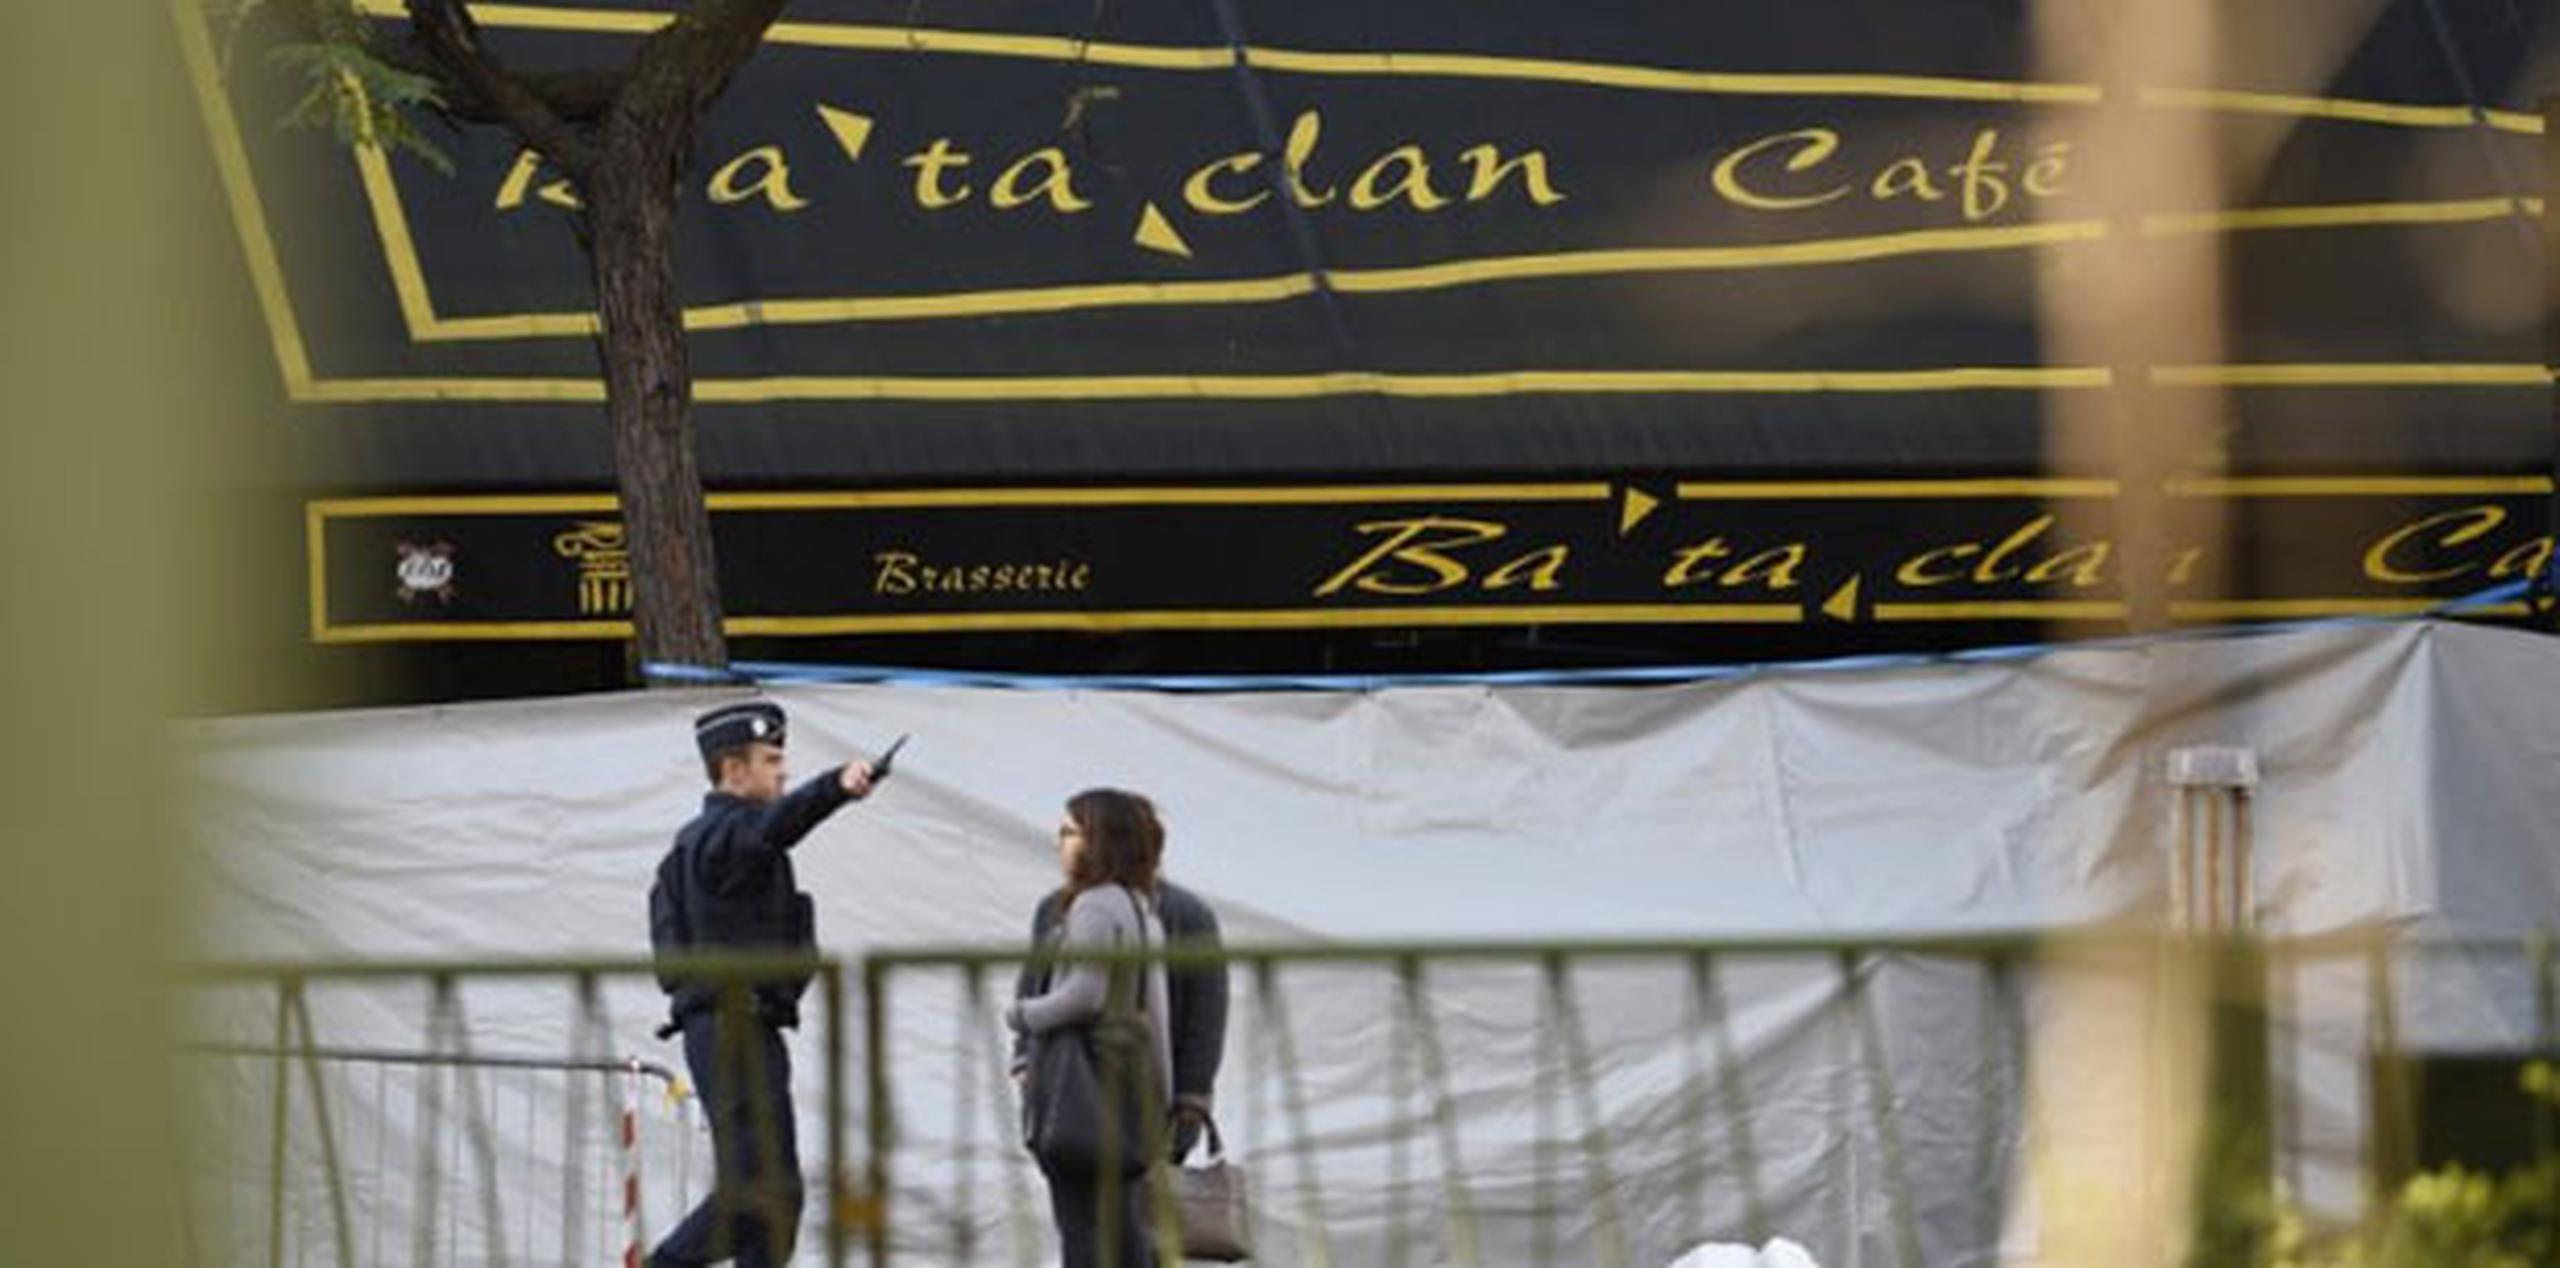 Con al menos 89 víctimas mortales, la sala Bataclan ha sido el lugar que vivió la peor matanza en la cadena de atentados en la capital francesa. (AFP  / MIGUEL MEDINA)